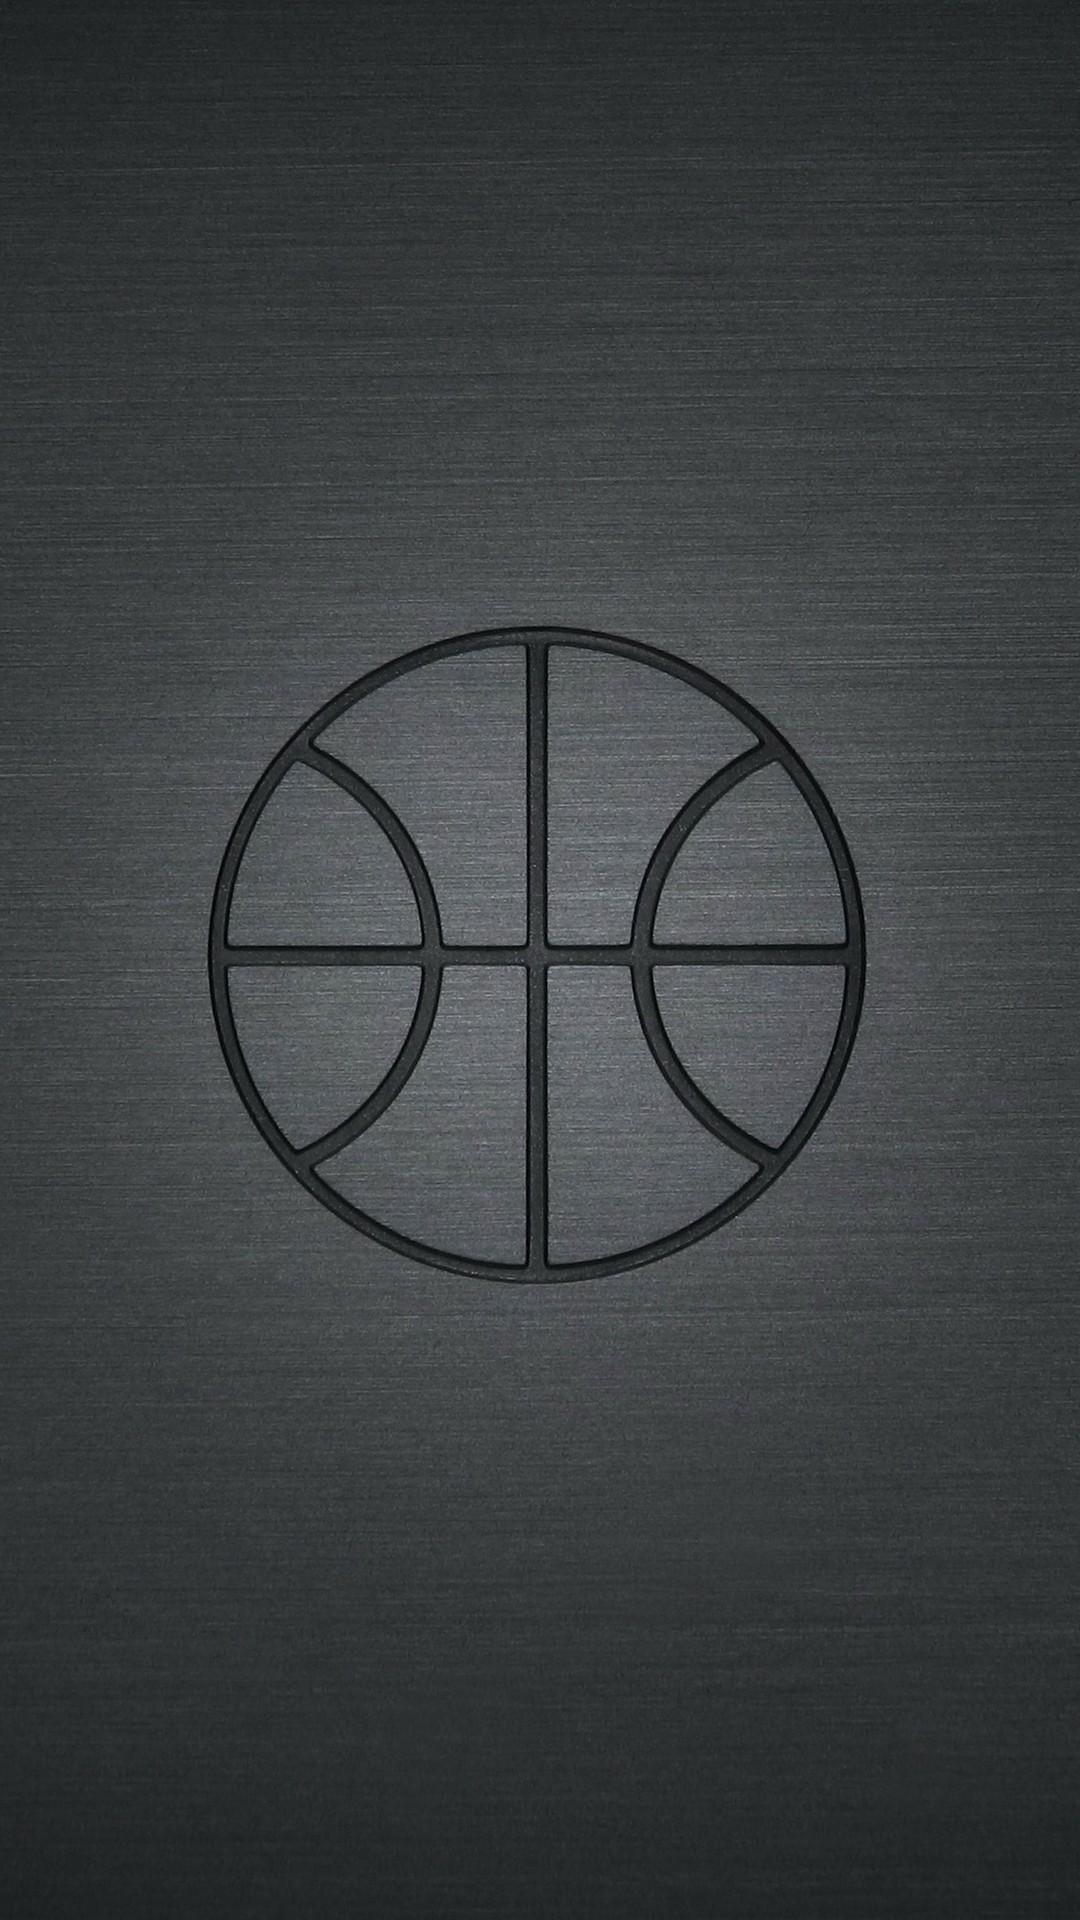 NBA Basketball iPhone 7 Wallpaper Basketball Wallpaper